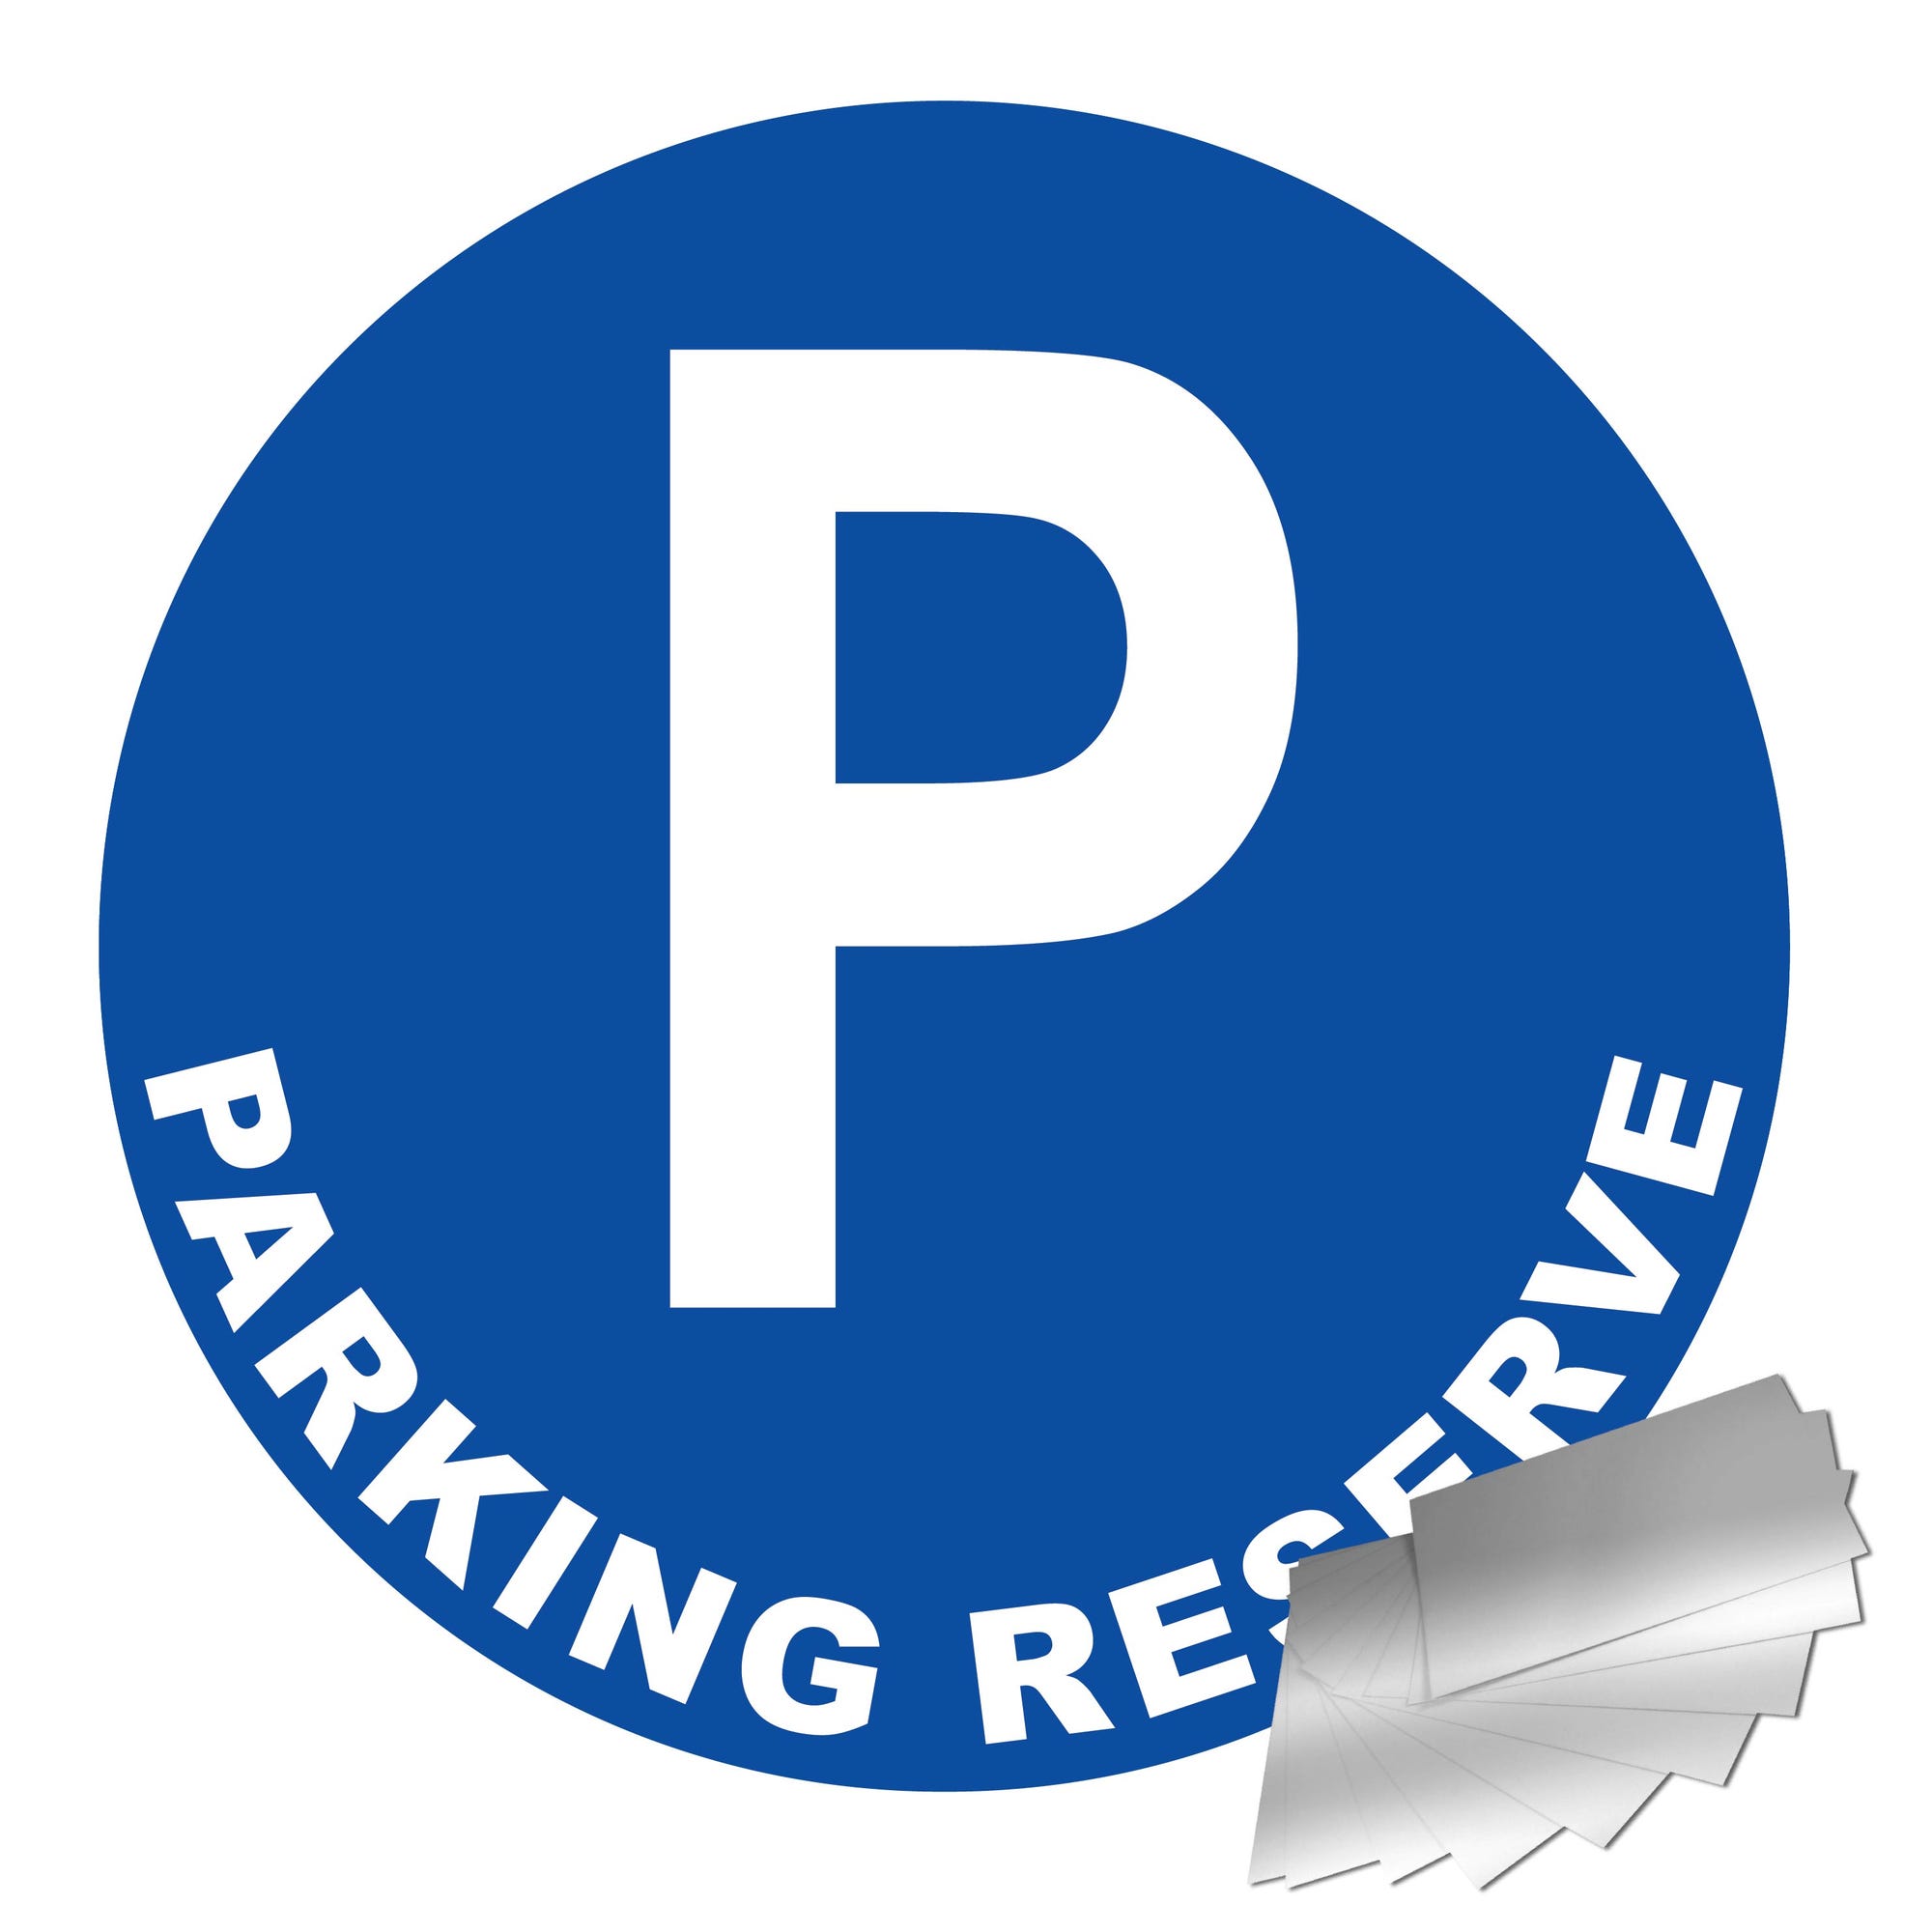 Panneau Parking réserve - Alu Ø300mm - 4011332 0